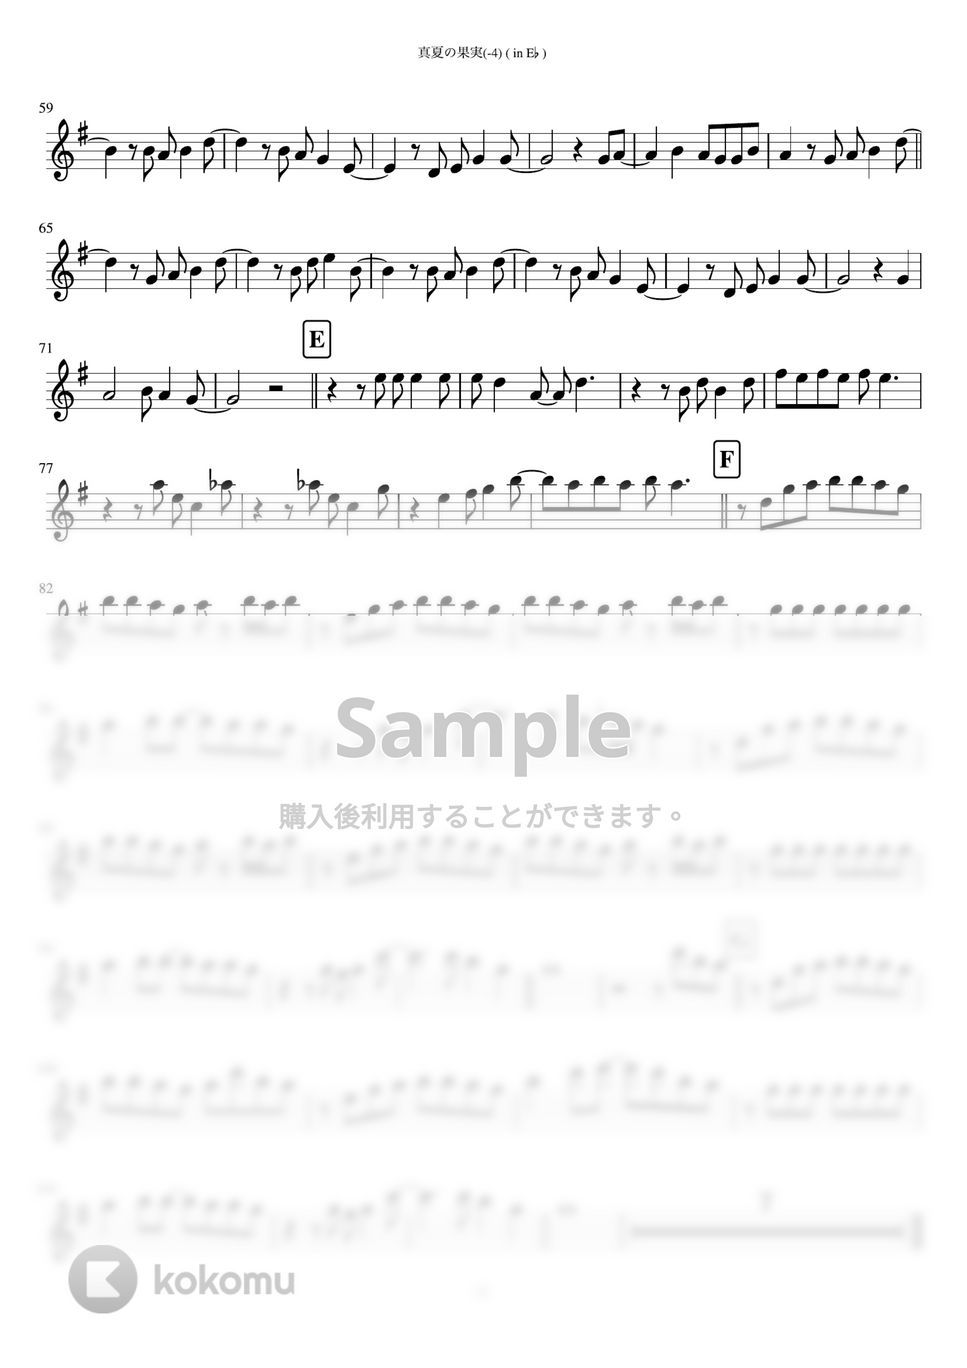 サザンオールスターズ - 真夏の果実 (in E♭/ 原曲-4キー) by inojunCH